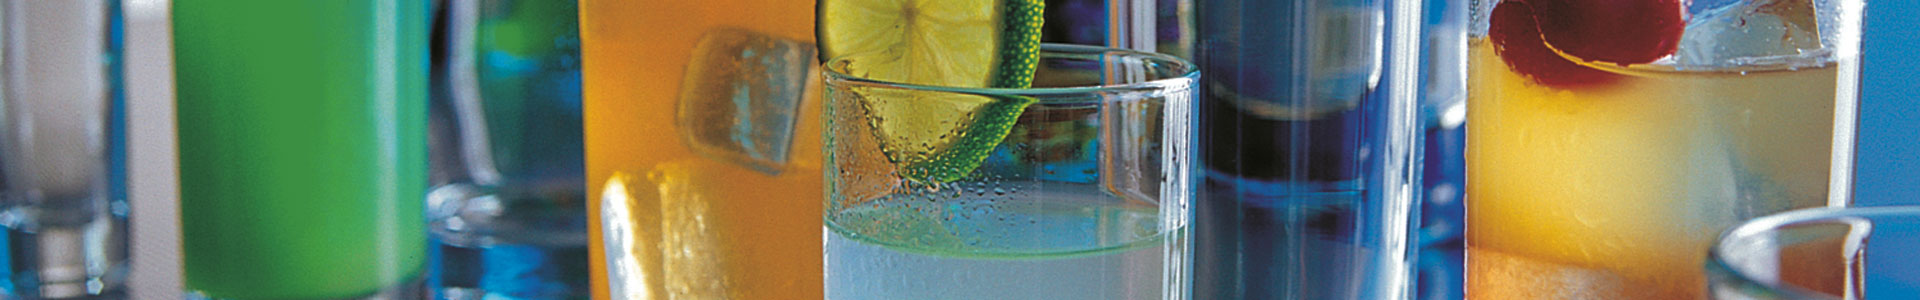 Arcoroc Trinkgläser mit bunten Cocktails